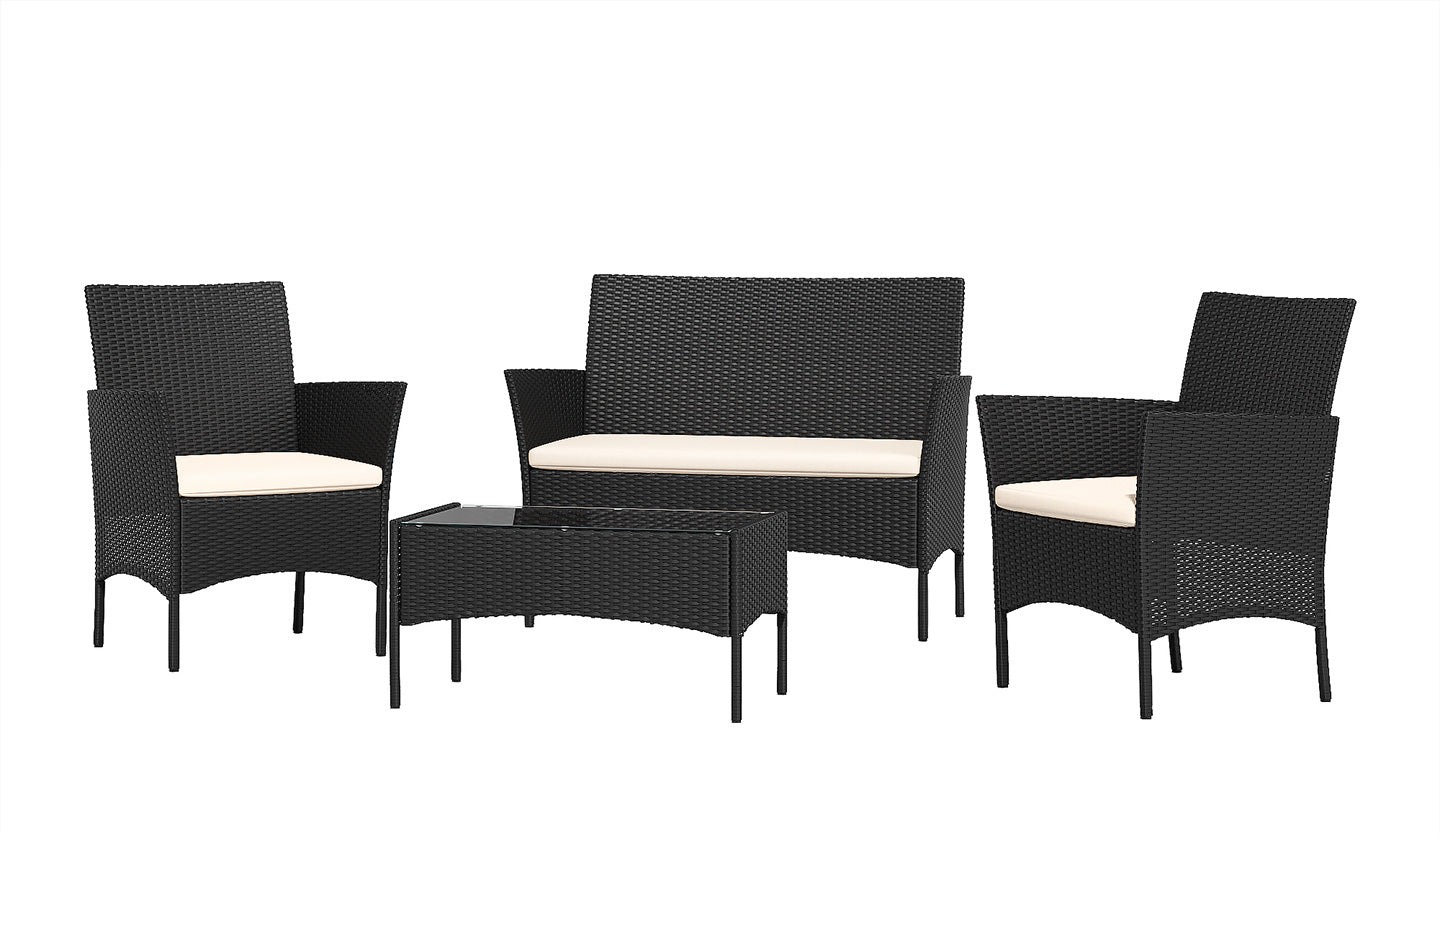 Set di mobili da giardino in rattan a 4 posti con 2 sedie singole, 1 divano doppio e 1 tavolo